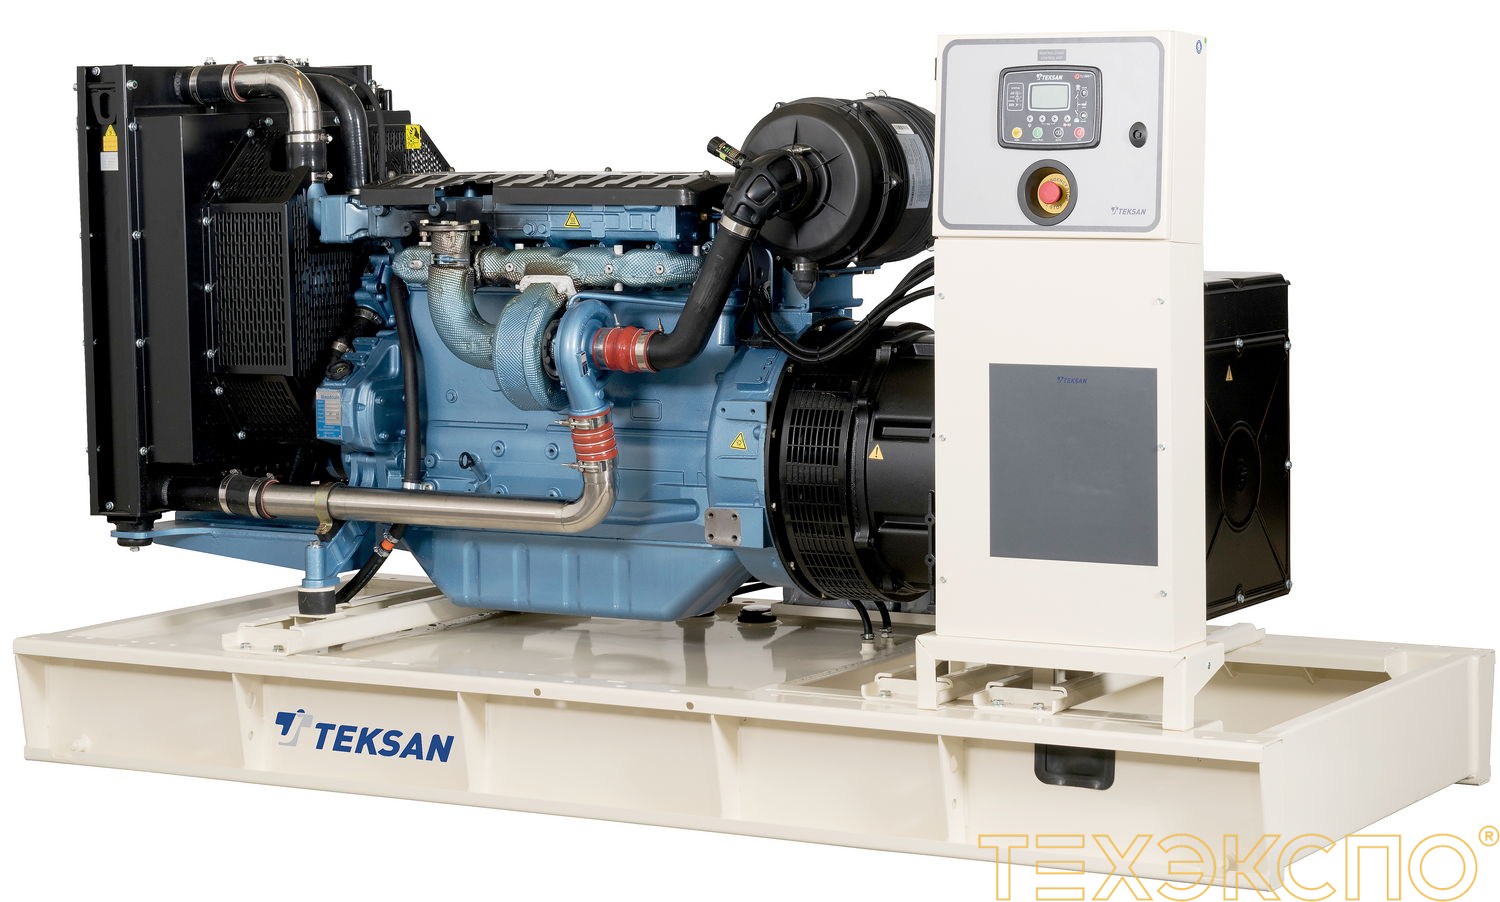 Teksan TJ440BD5C - ДЭС 320 кВт в Санкт-Петербурге за 3 766 099 рублей | Дизельная электростанция в Техэкспо